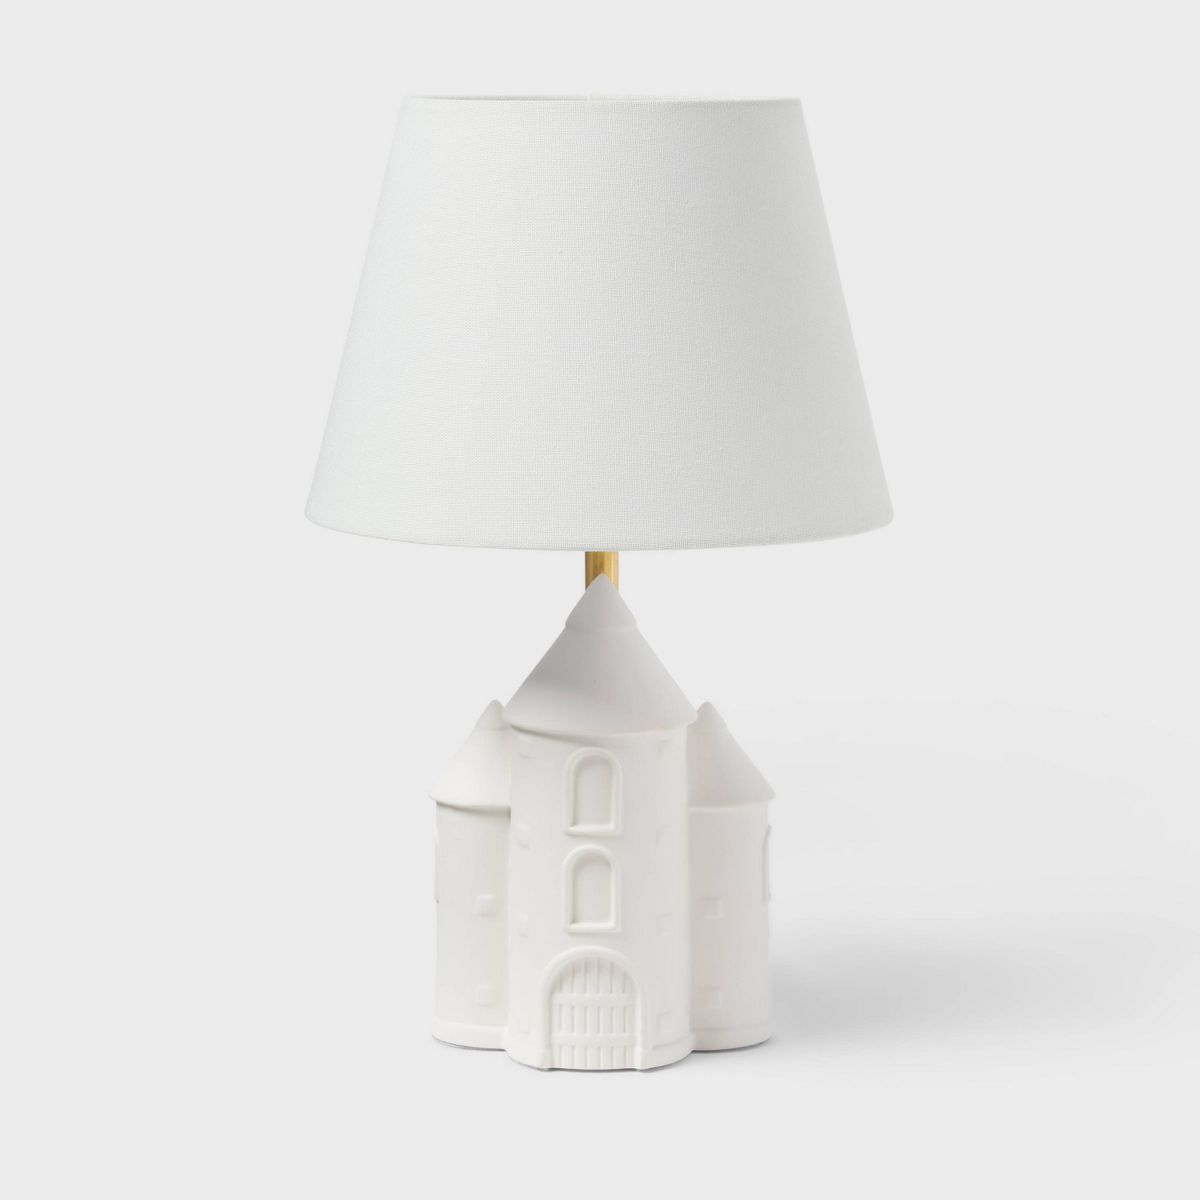 Castle Kids' Table Lamp White - Pillowfort™ | Target